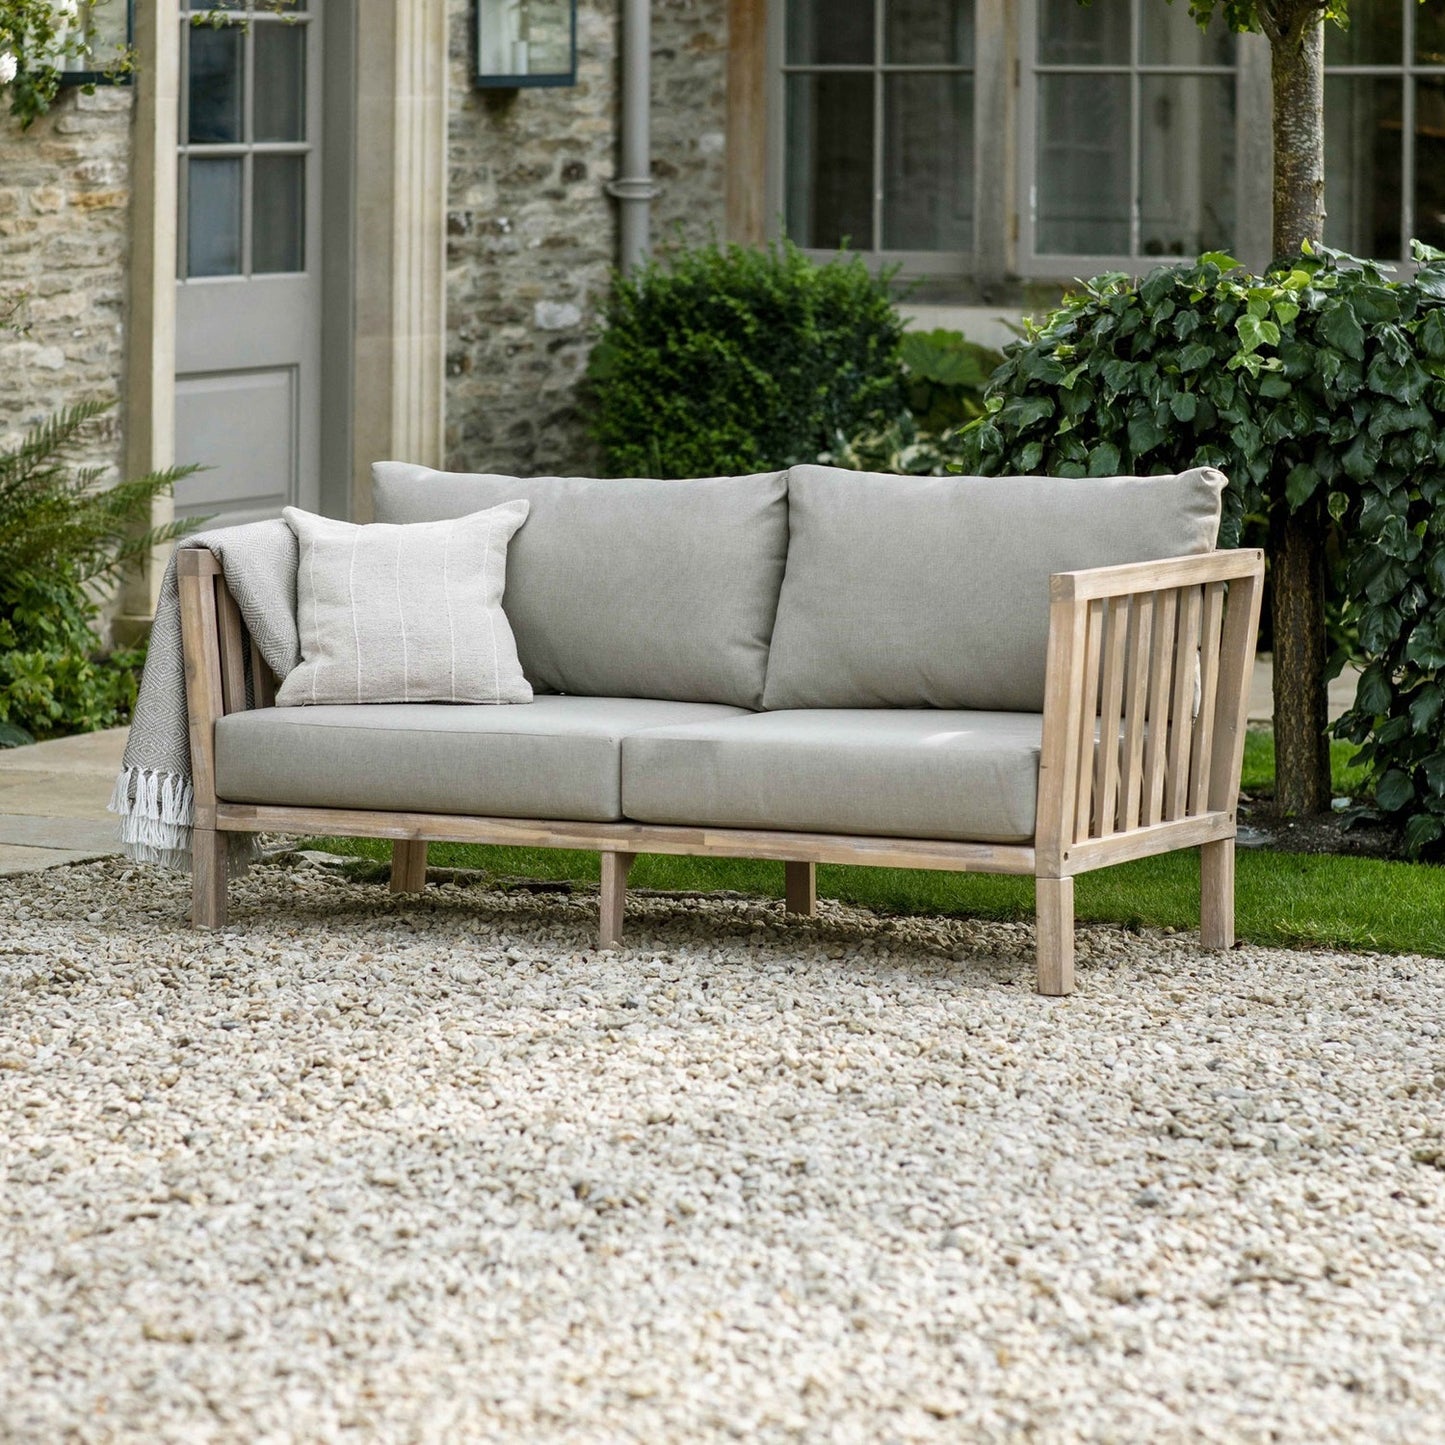 Porthallow Outdoor 2 Seater Sofa Acacia by Garden Trading